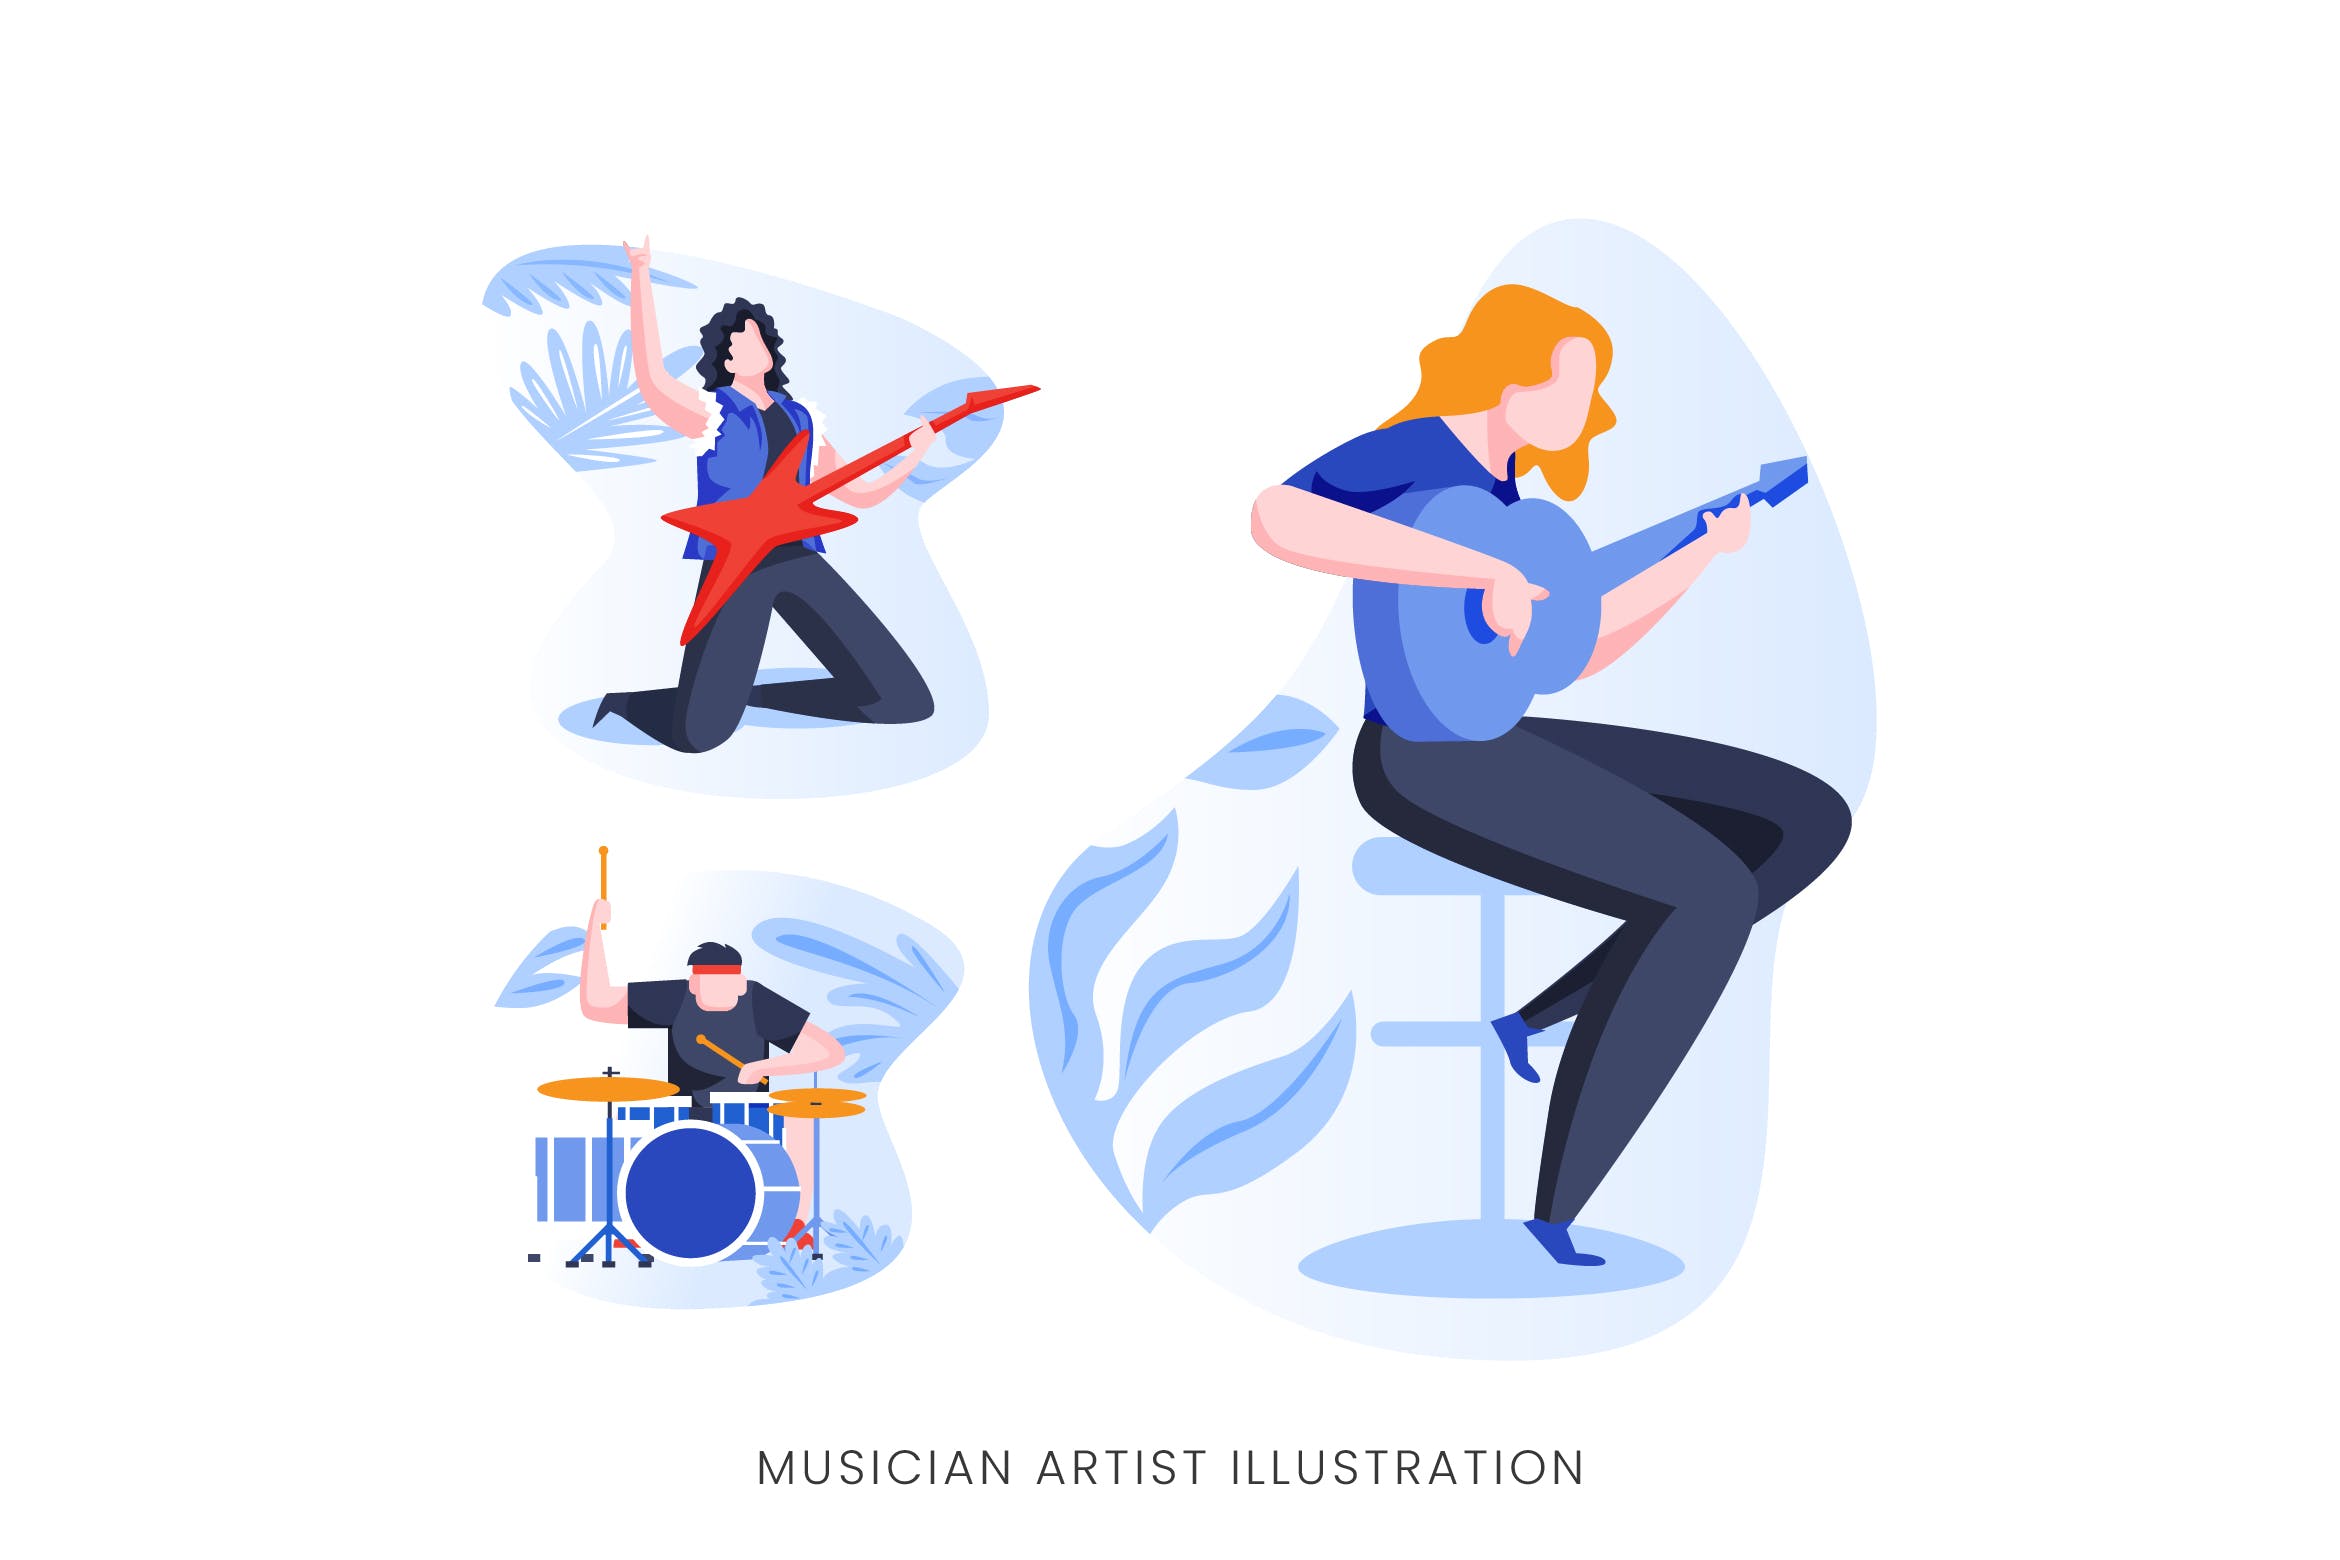 音乐家艺术家人物形象矢量手绘素材中国精选设计素材 Musician Artist Vector Character Set插图